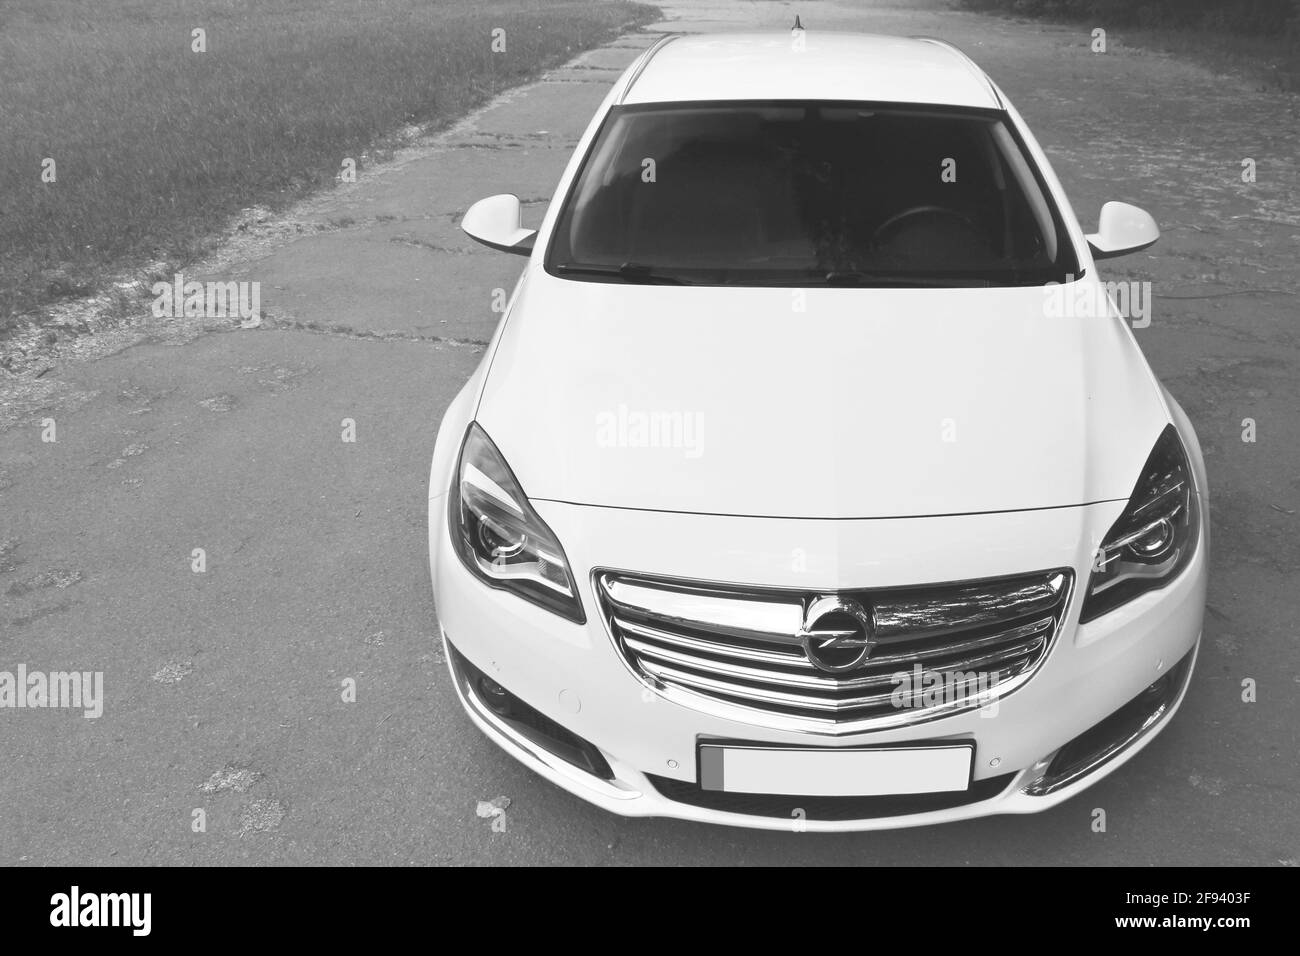 Chernihiv, Ukraine - June 16, 2018: White Opel Insignia on the road Stock Photo